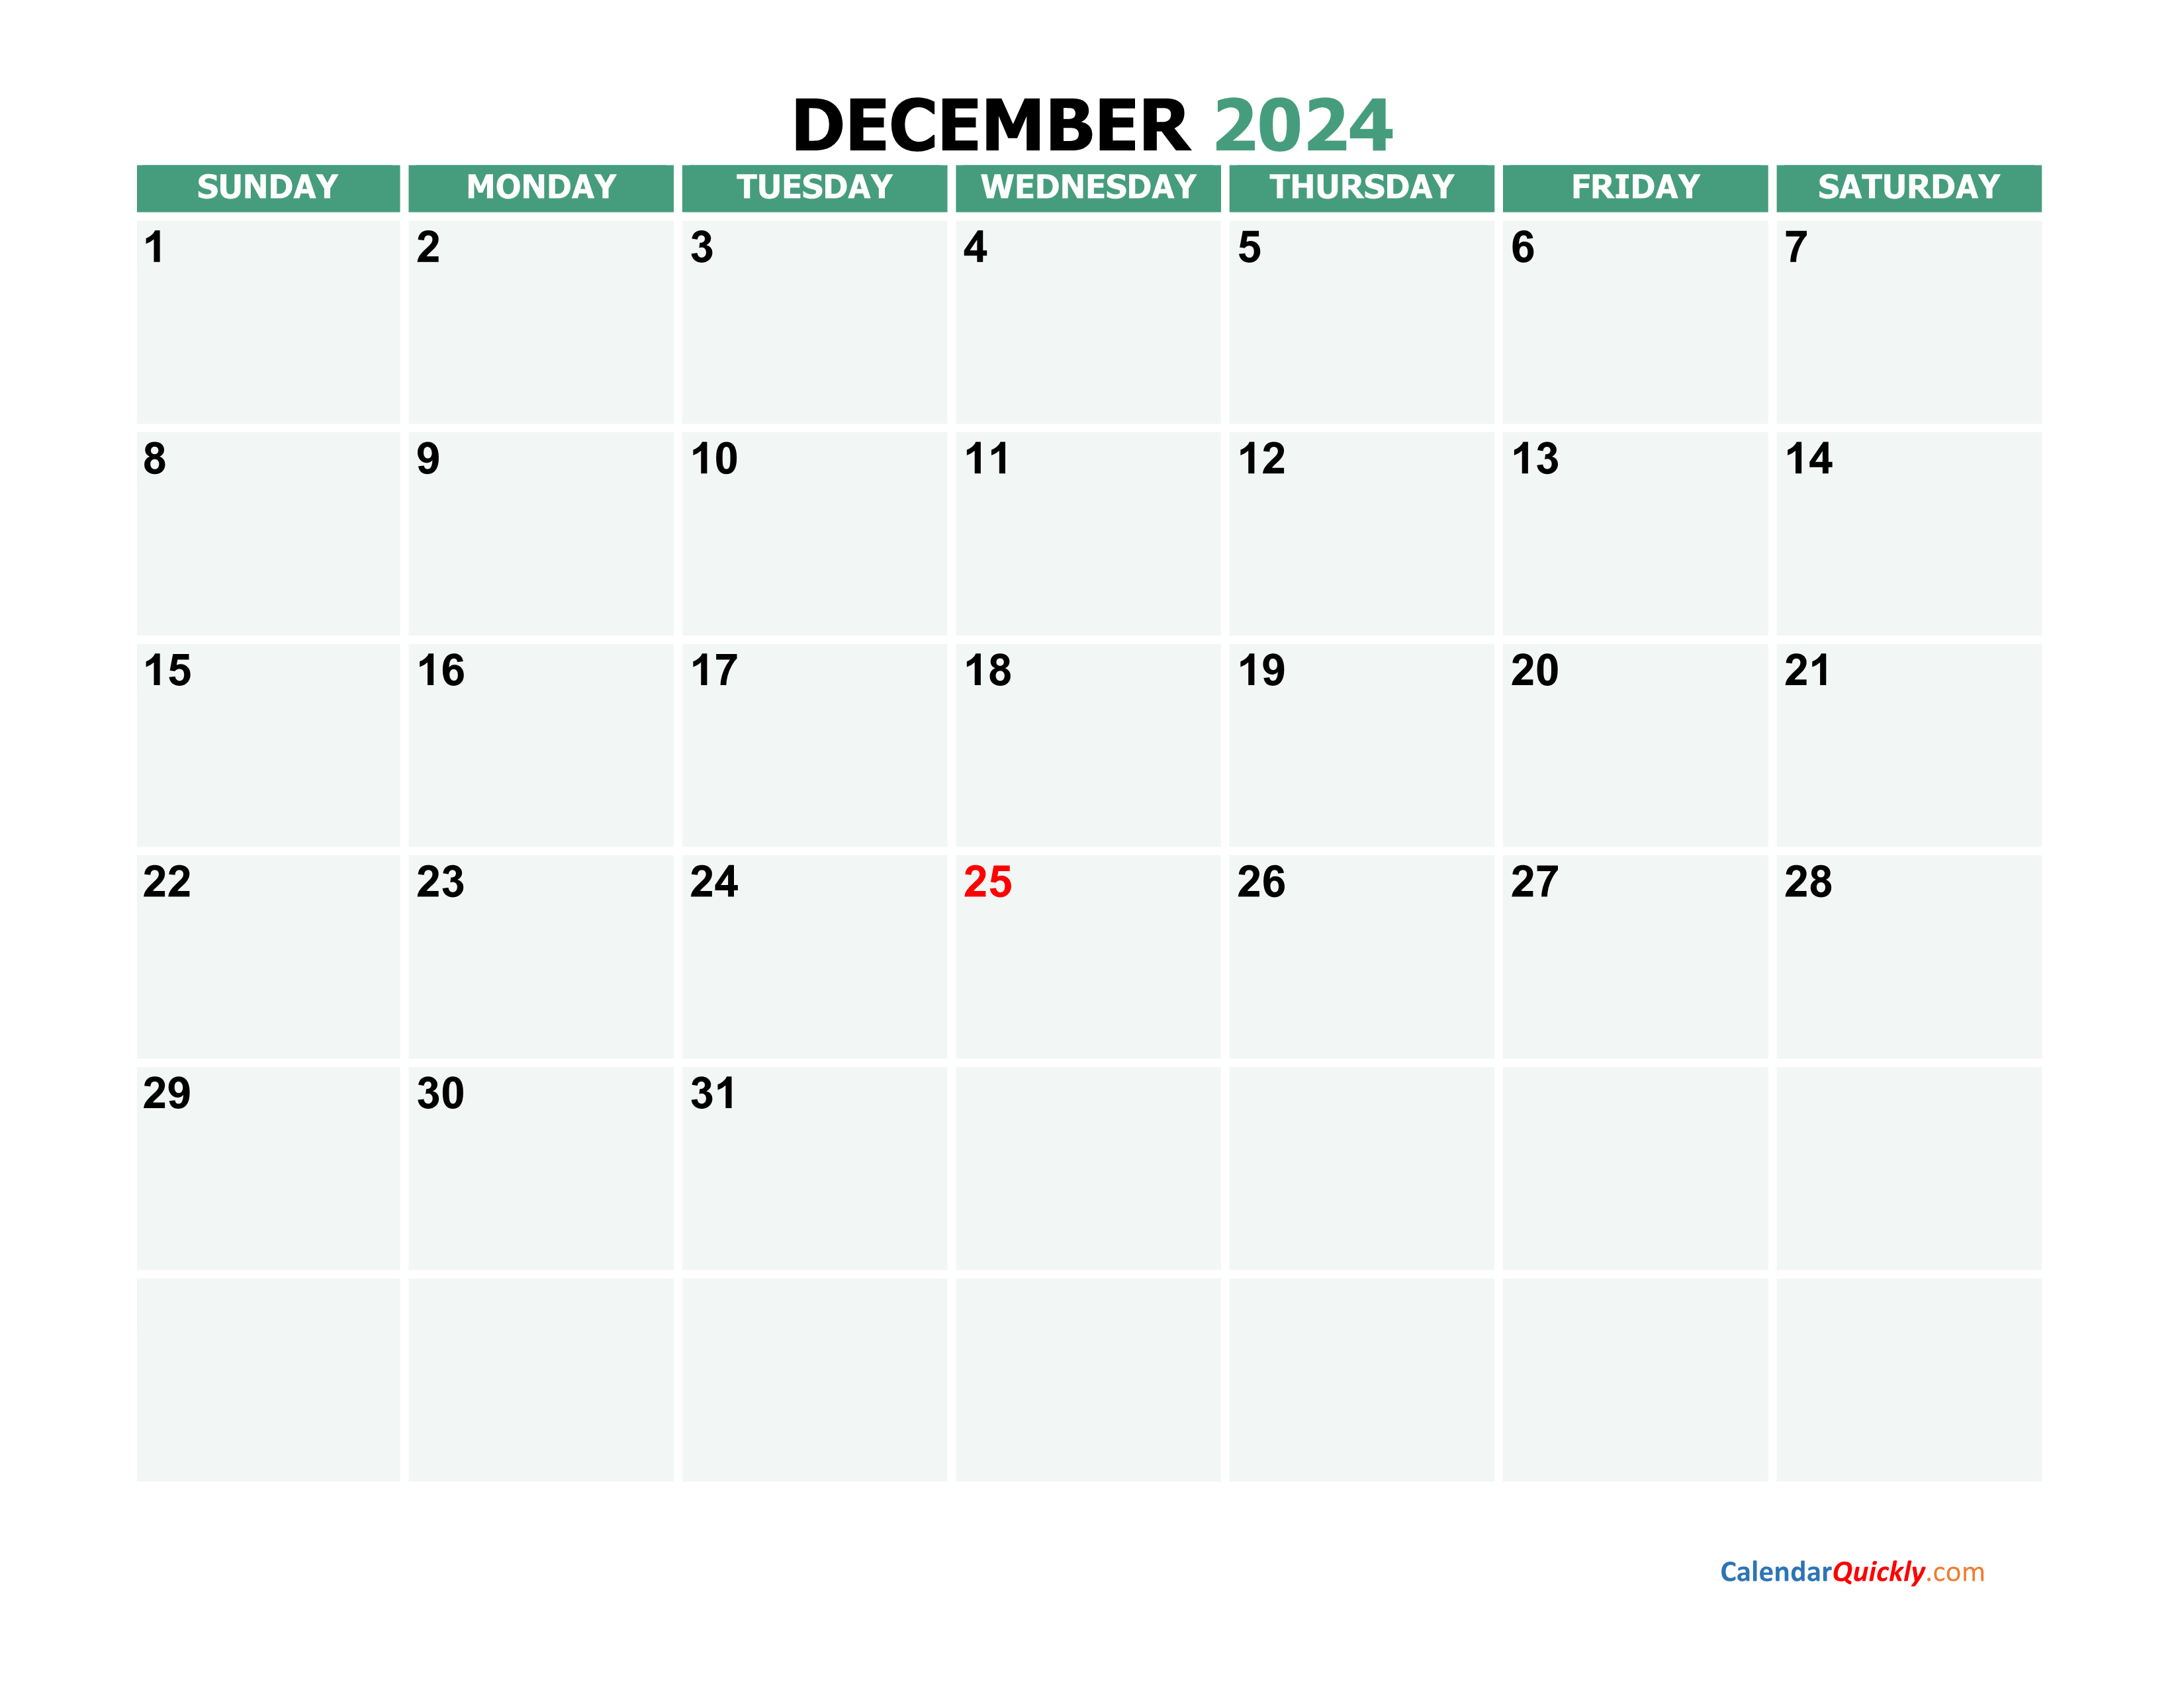 December 2024 Printable Calendar Calendar Quickly